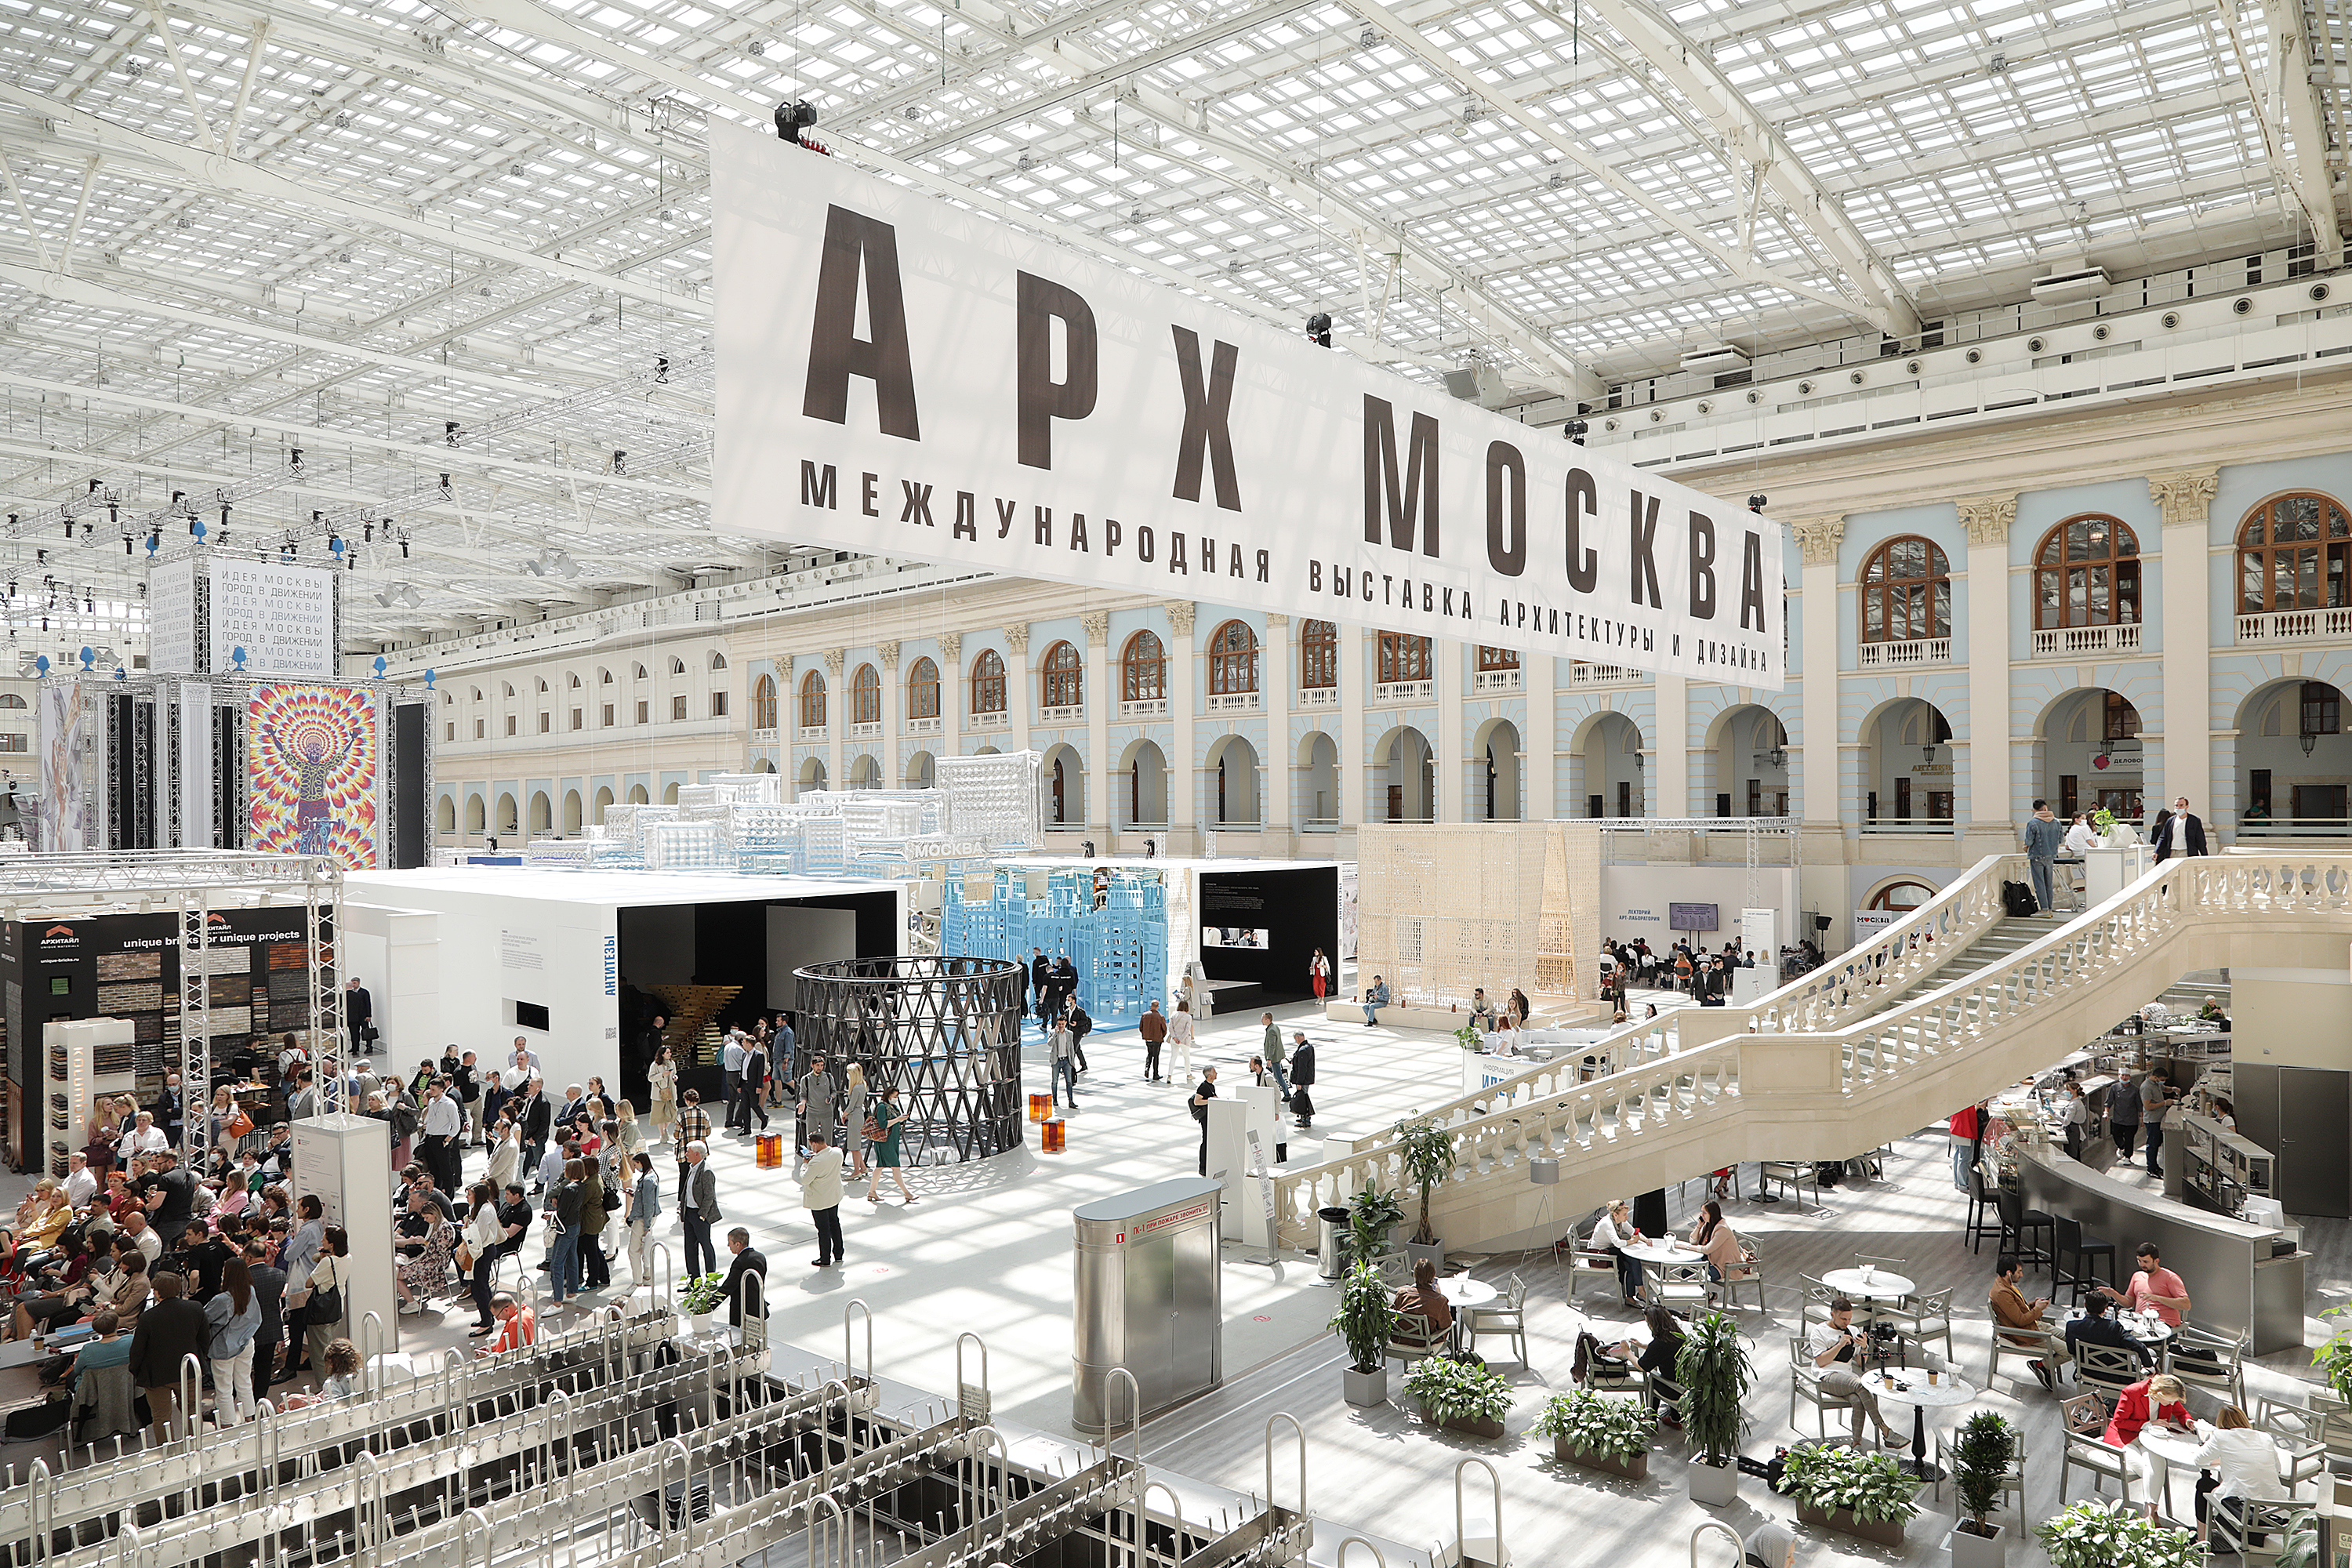 Международная выставка-форум архитектуры и дизайна «АРХ Москва 2023» пройдёт с 24-27 мая